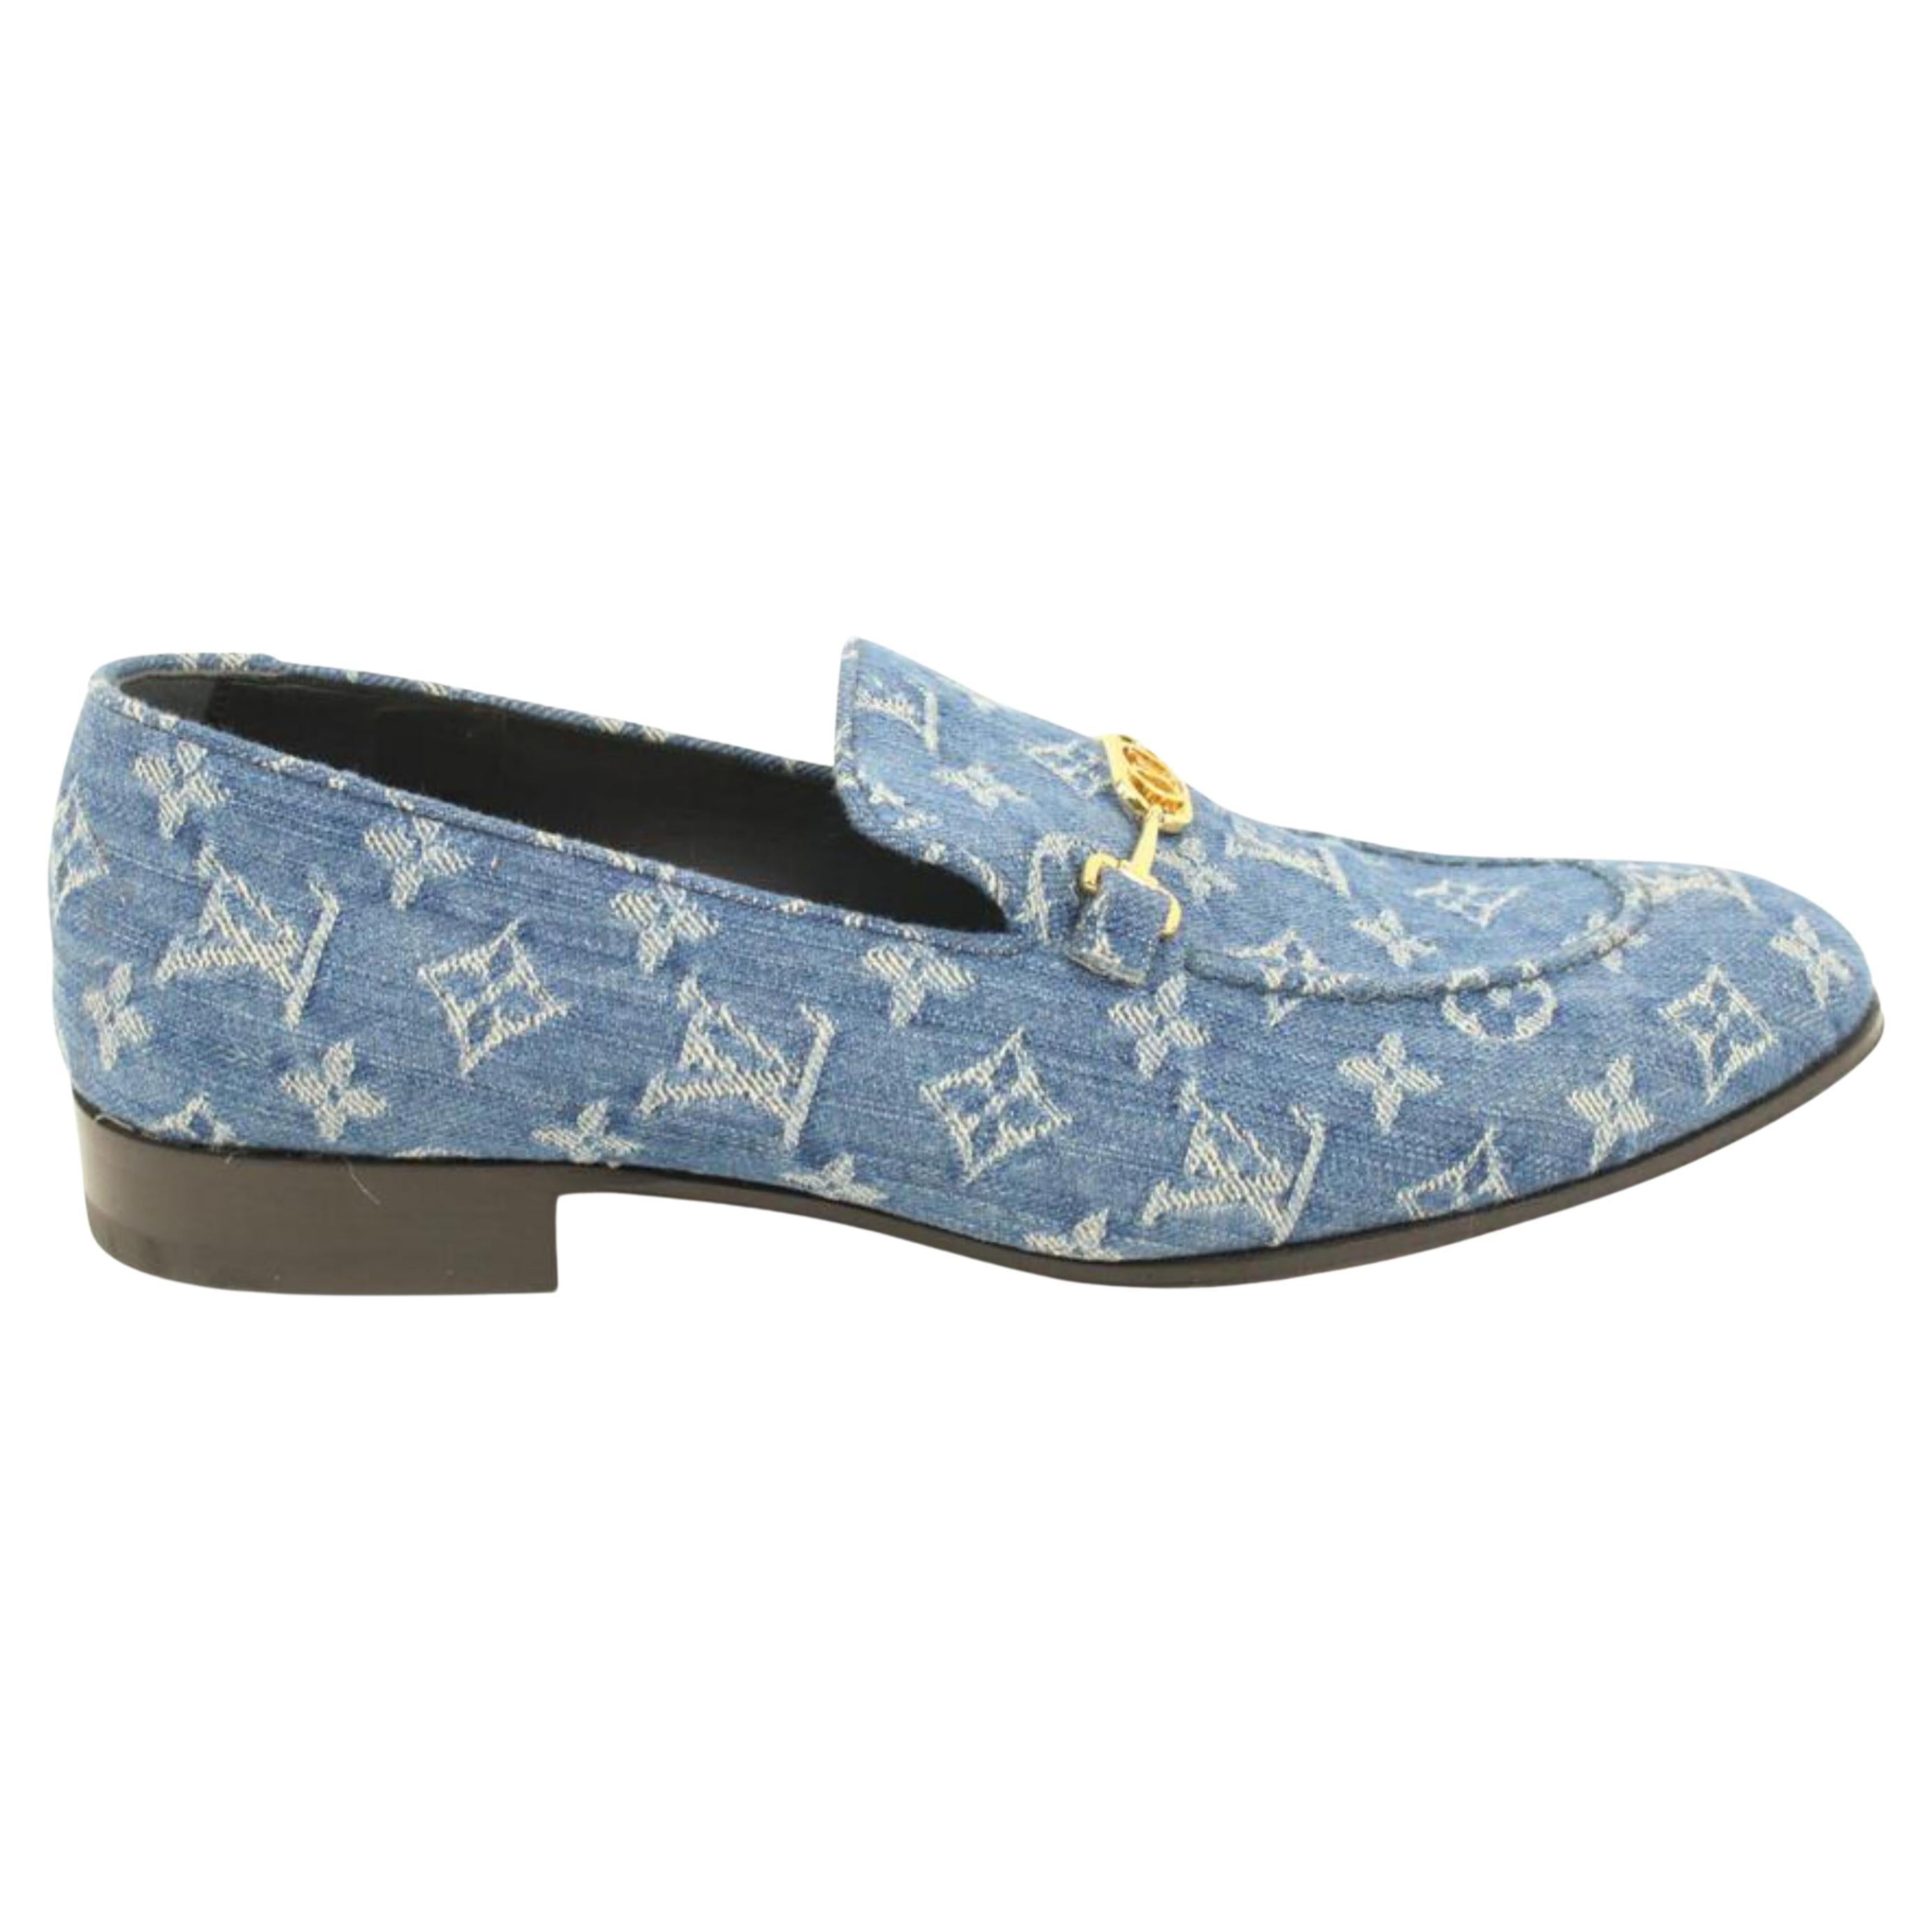 Louis Vuitton, Shoes, Louis Vuitton Mens Damier Blue Leather Sneaker 95uk  5us Euc